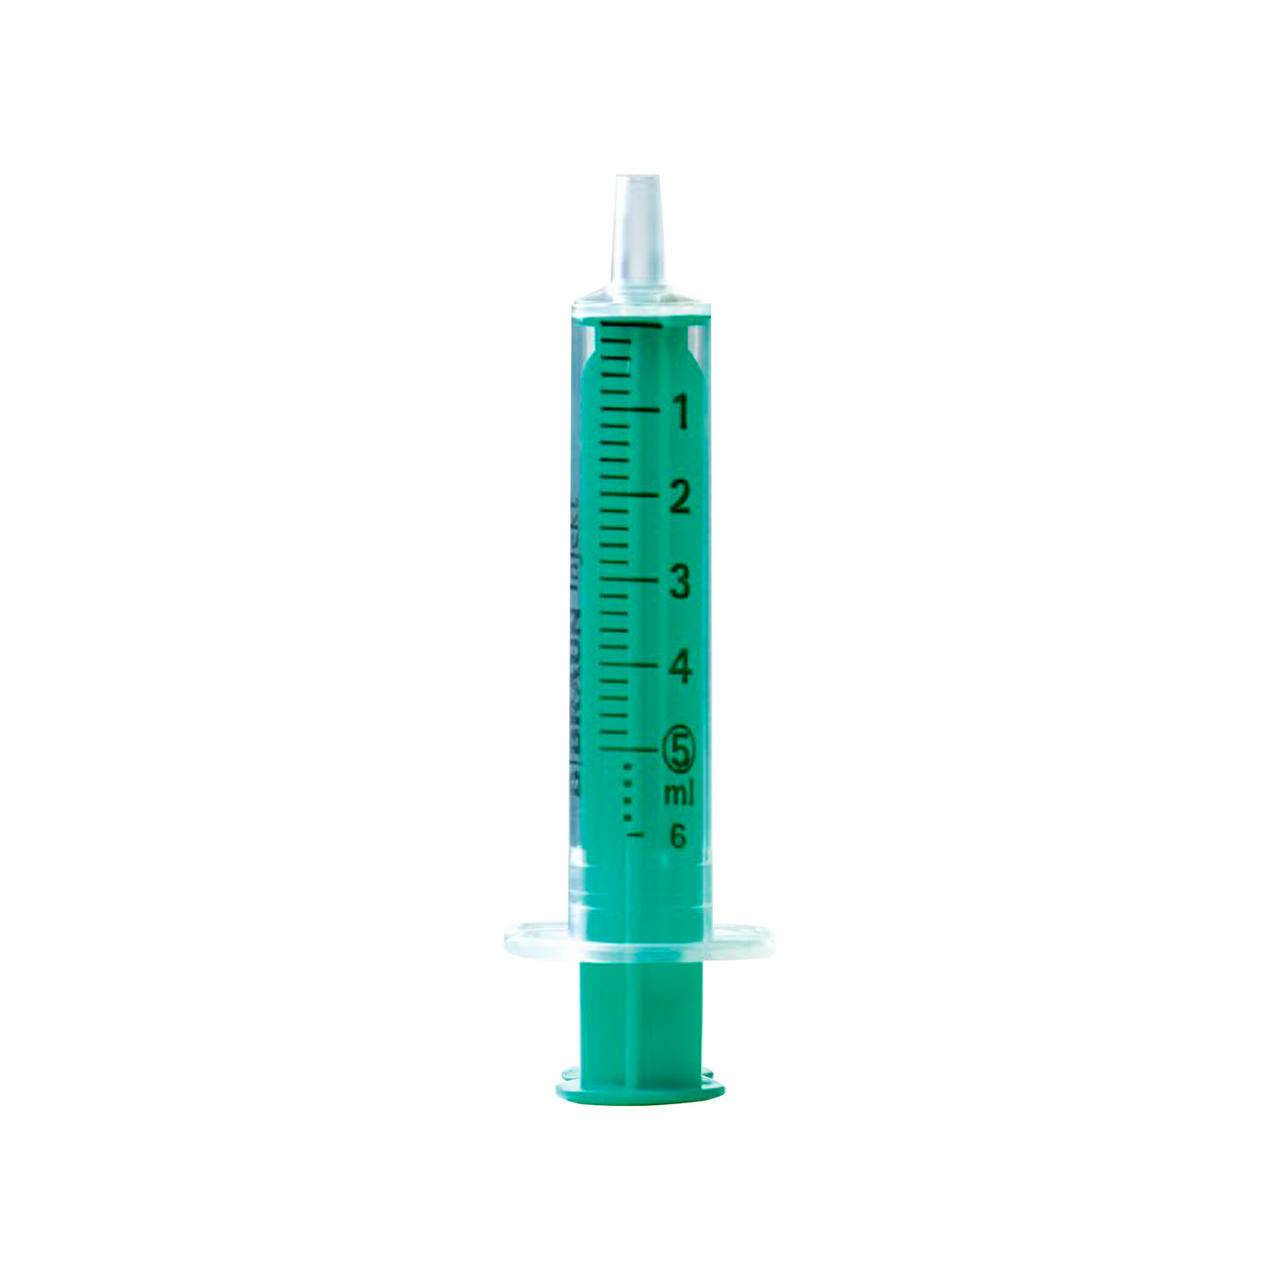 5ml BBraun Silicon Oil Free Injekt Syringe - UKMEDI